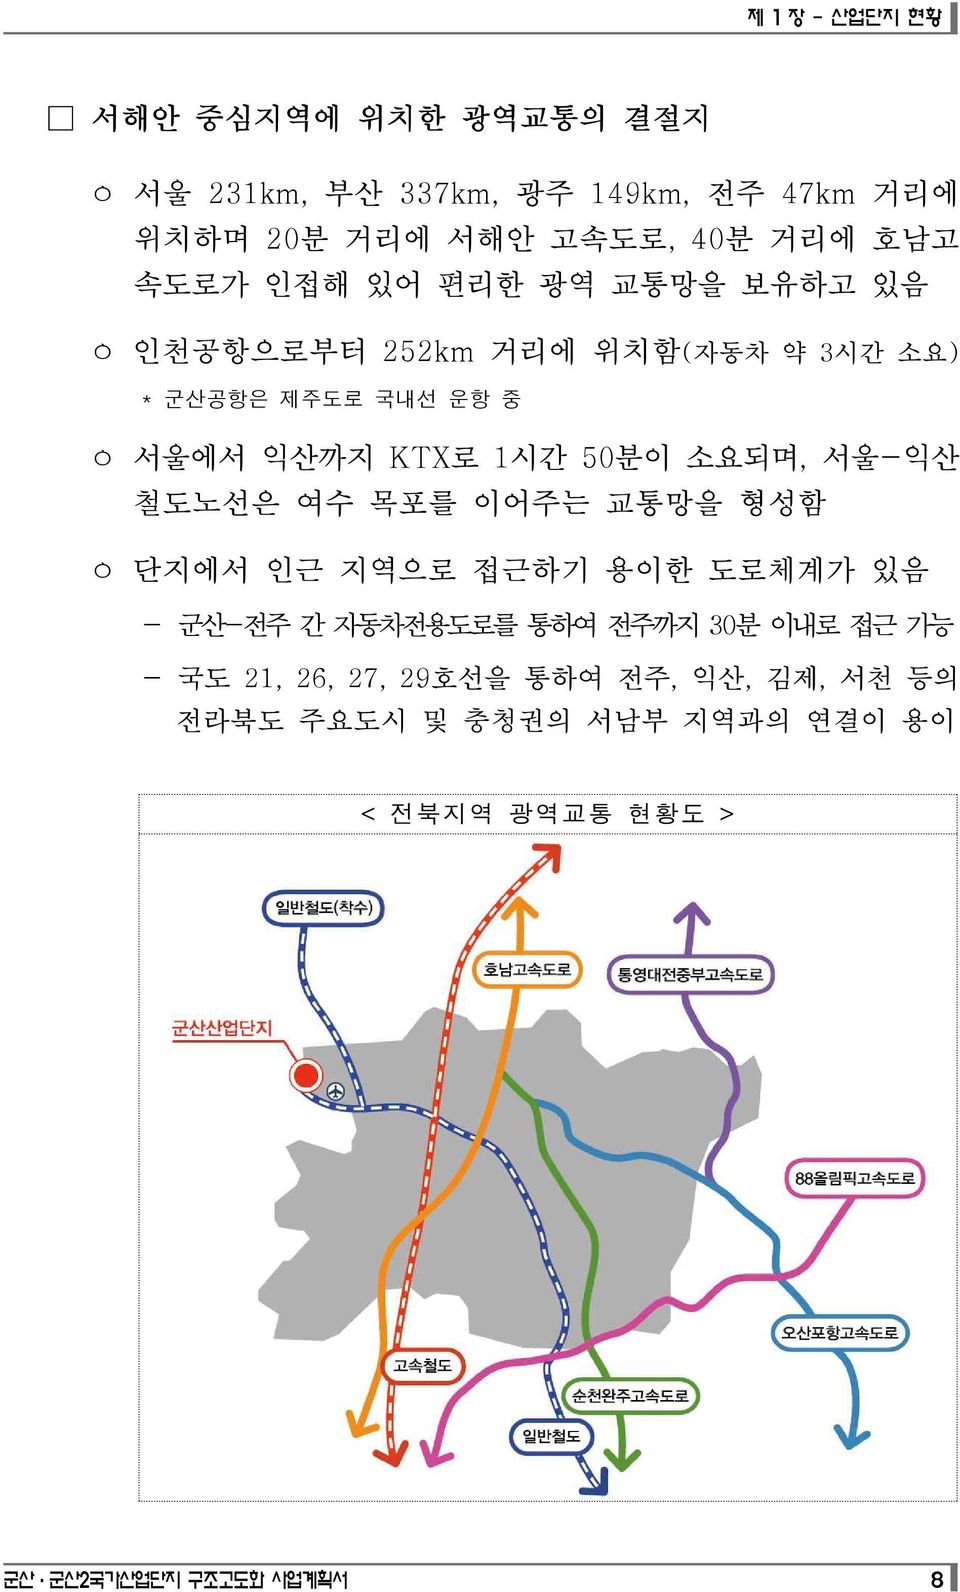 소요되며, 서울-익산 철도노선은 여수 목포를 이어주는 교통망을 형성함 ㅇ 단지에서 인근 지역으로 접근하기 용이한 도로체계가 있음 - 군산-전주 간 자동차전용도로를 통하여 전주까지 30분 이내로 접근 가능 - 국도